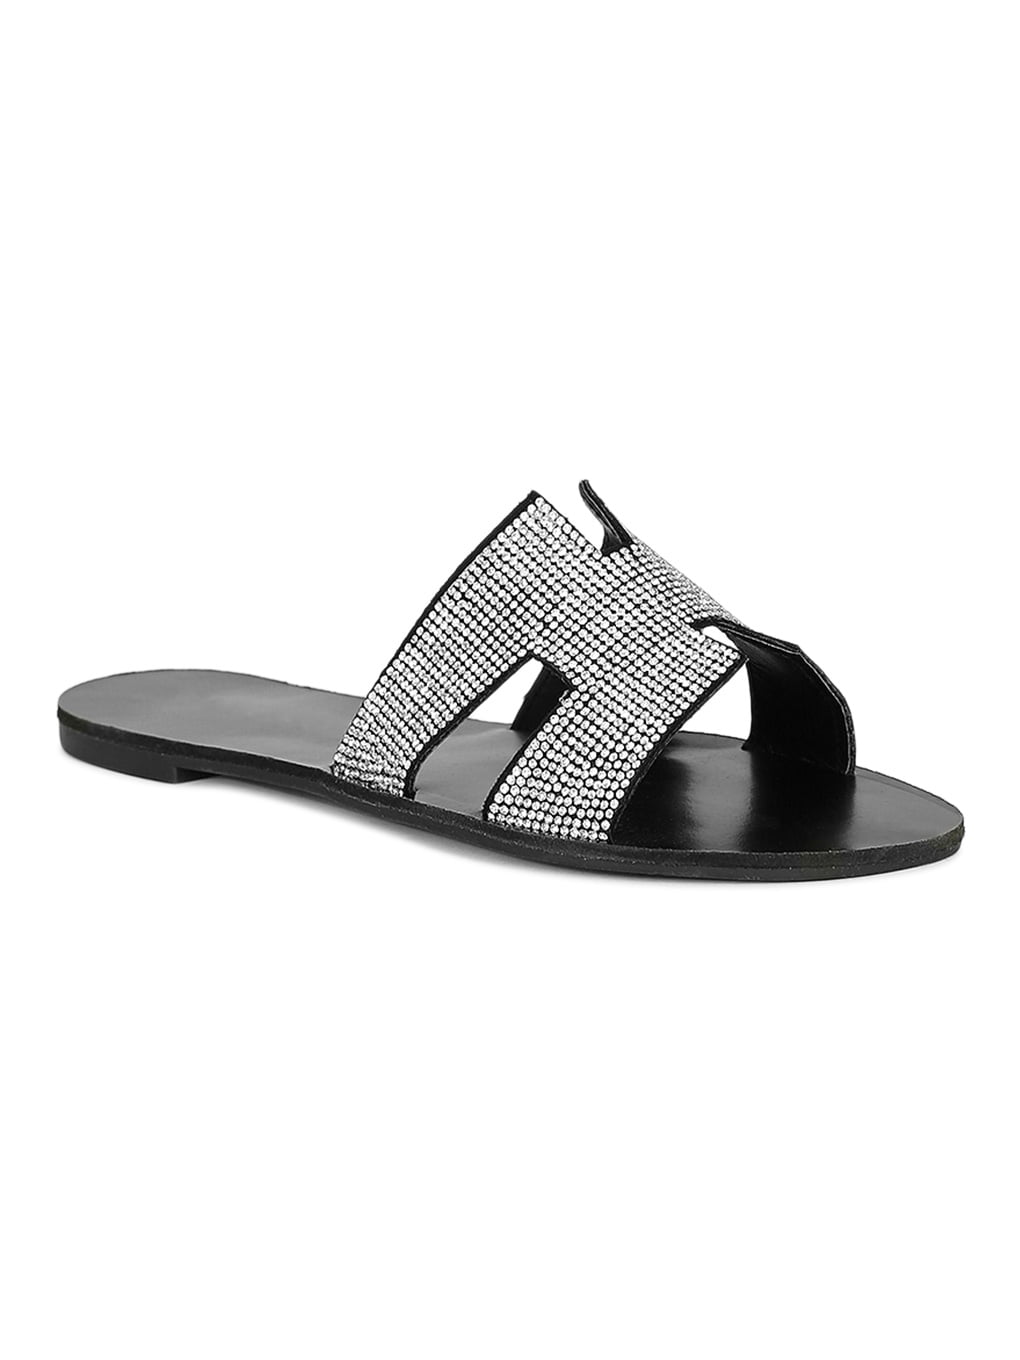 h slide sandals